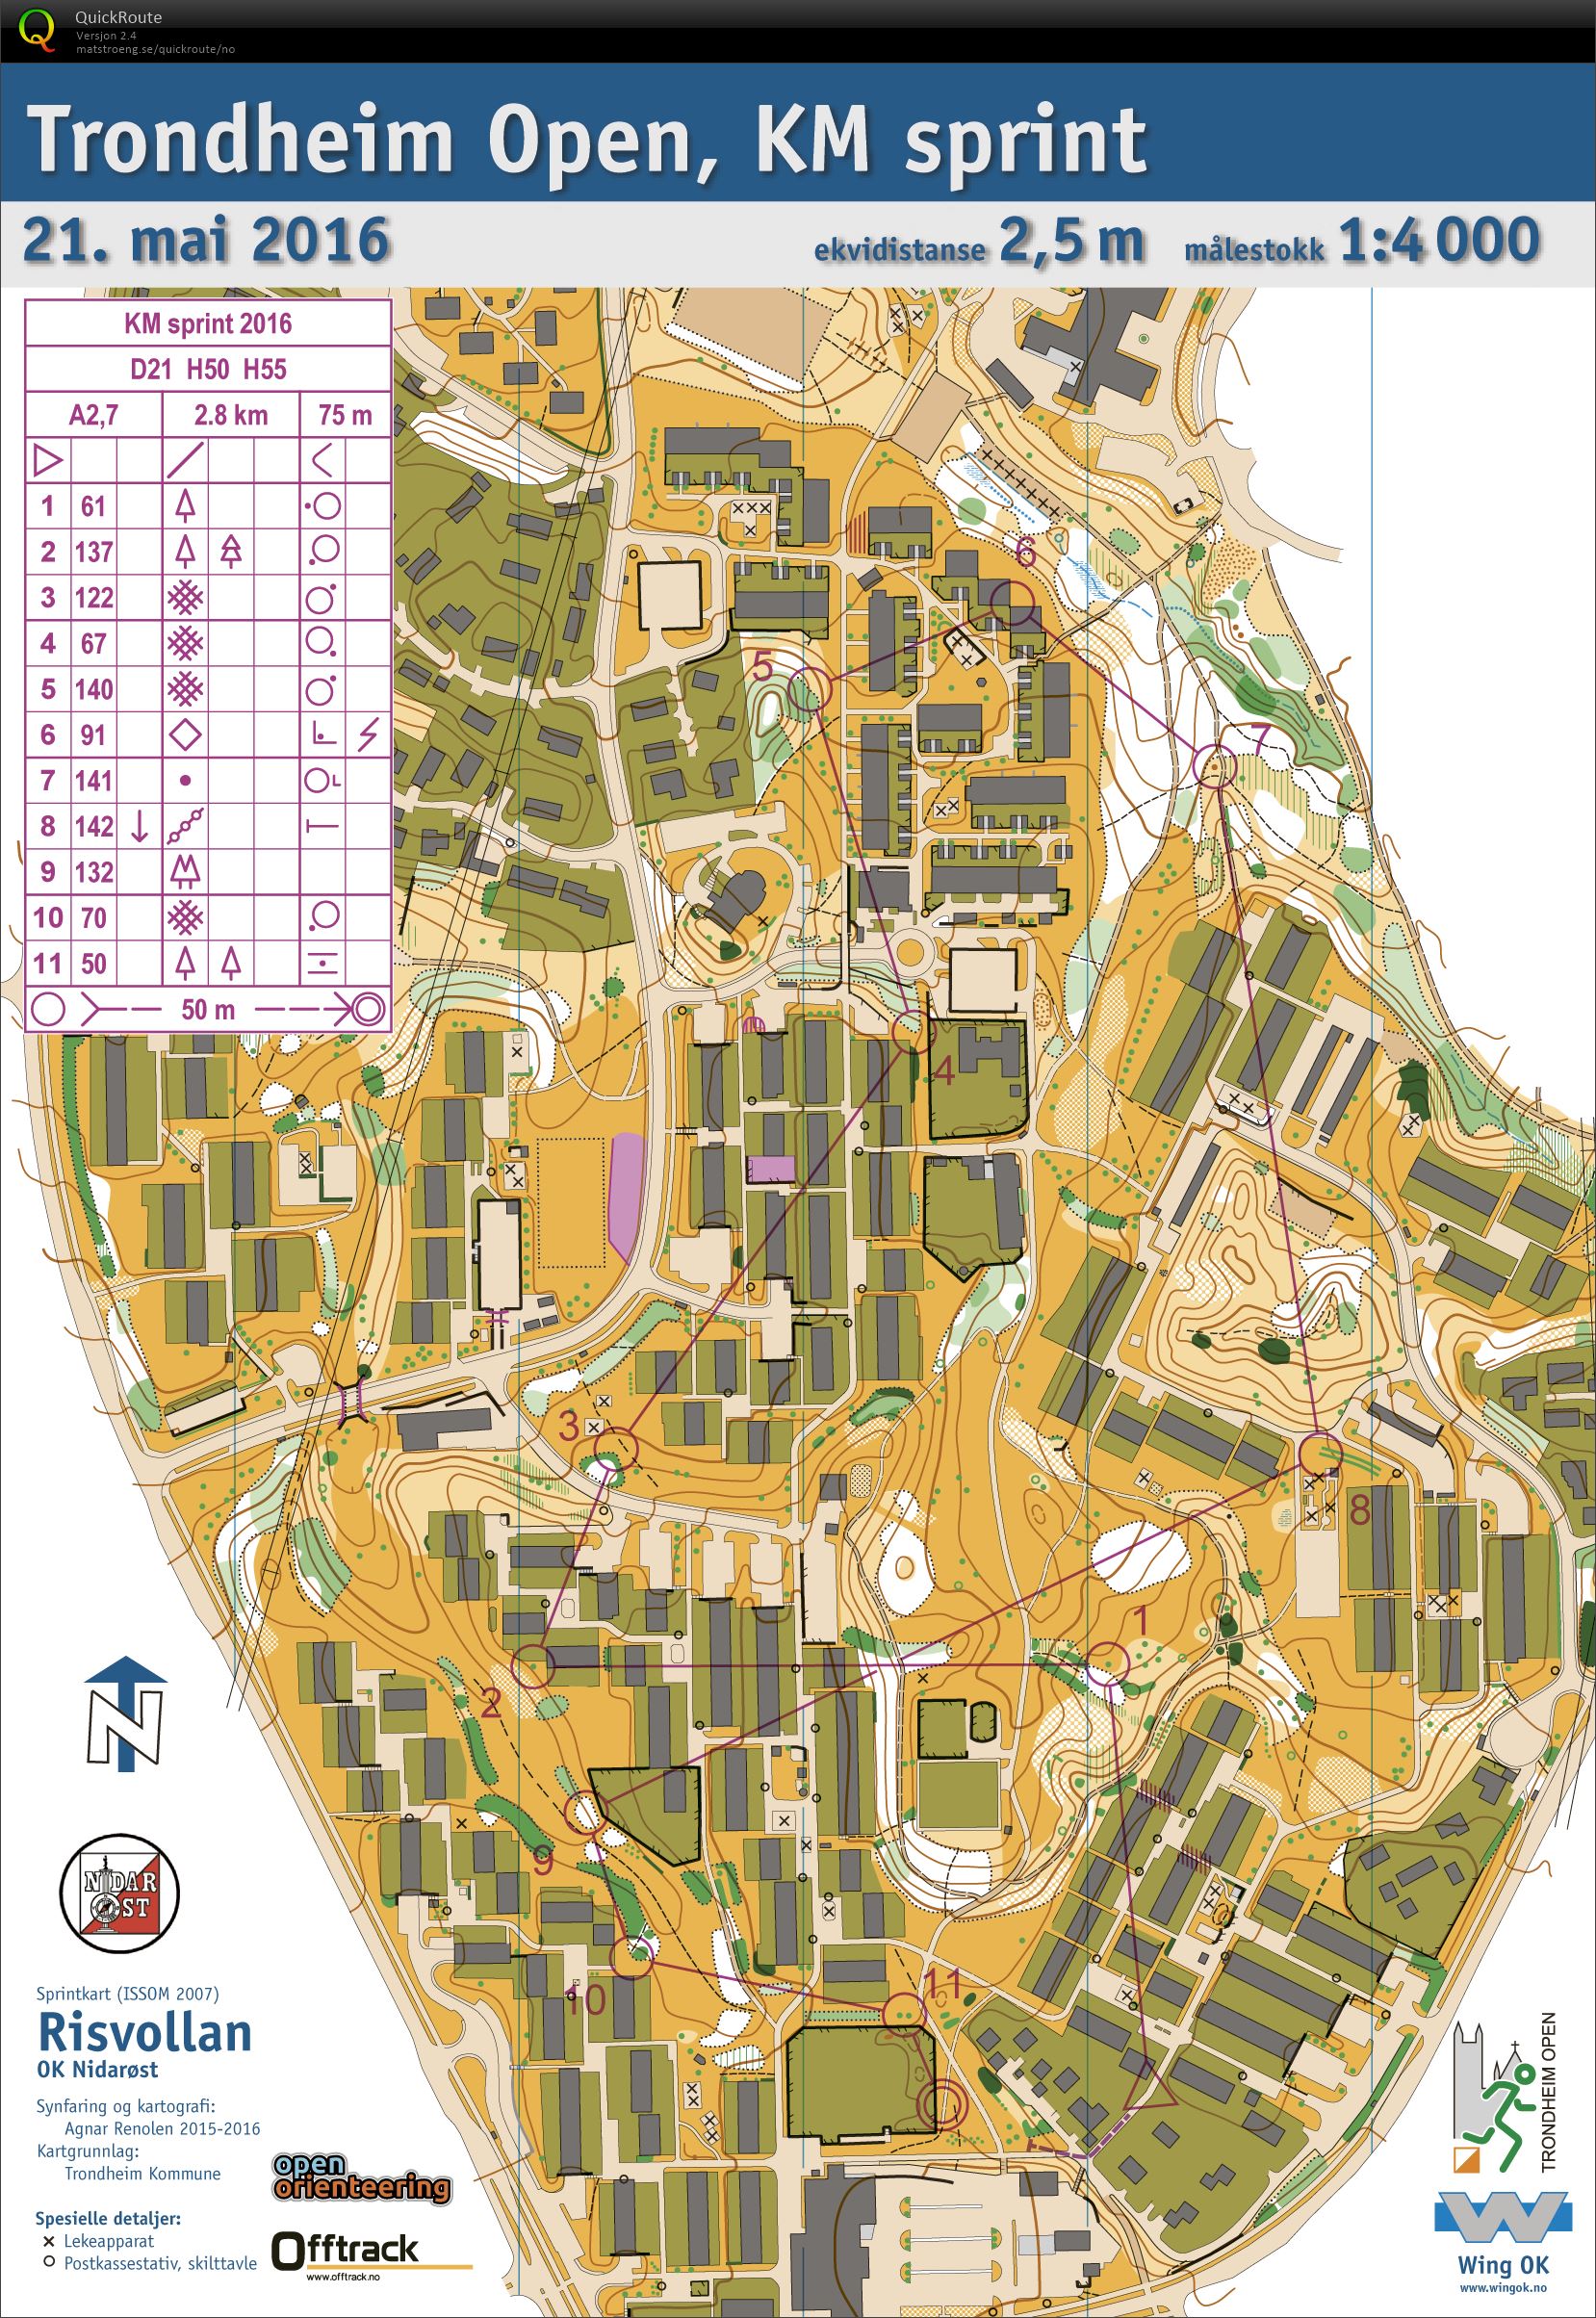 Trondheim Open, KM sprint (21.05.2016)